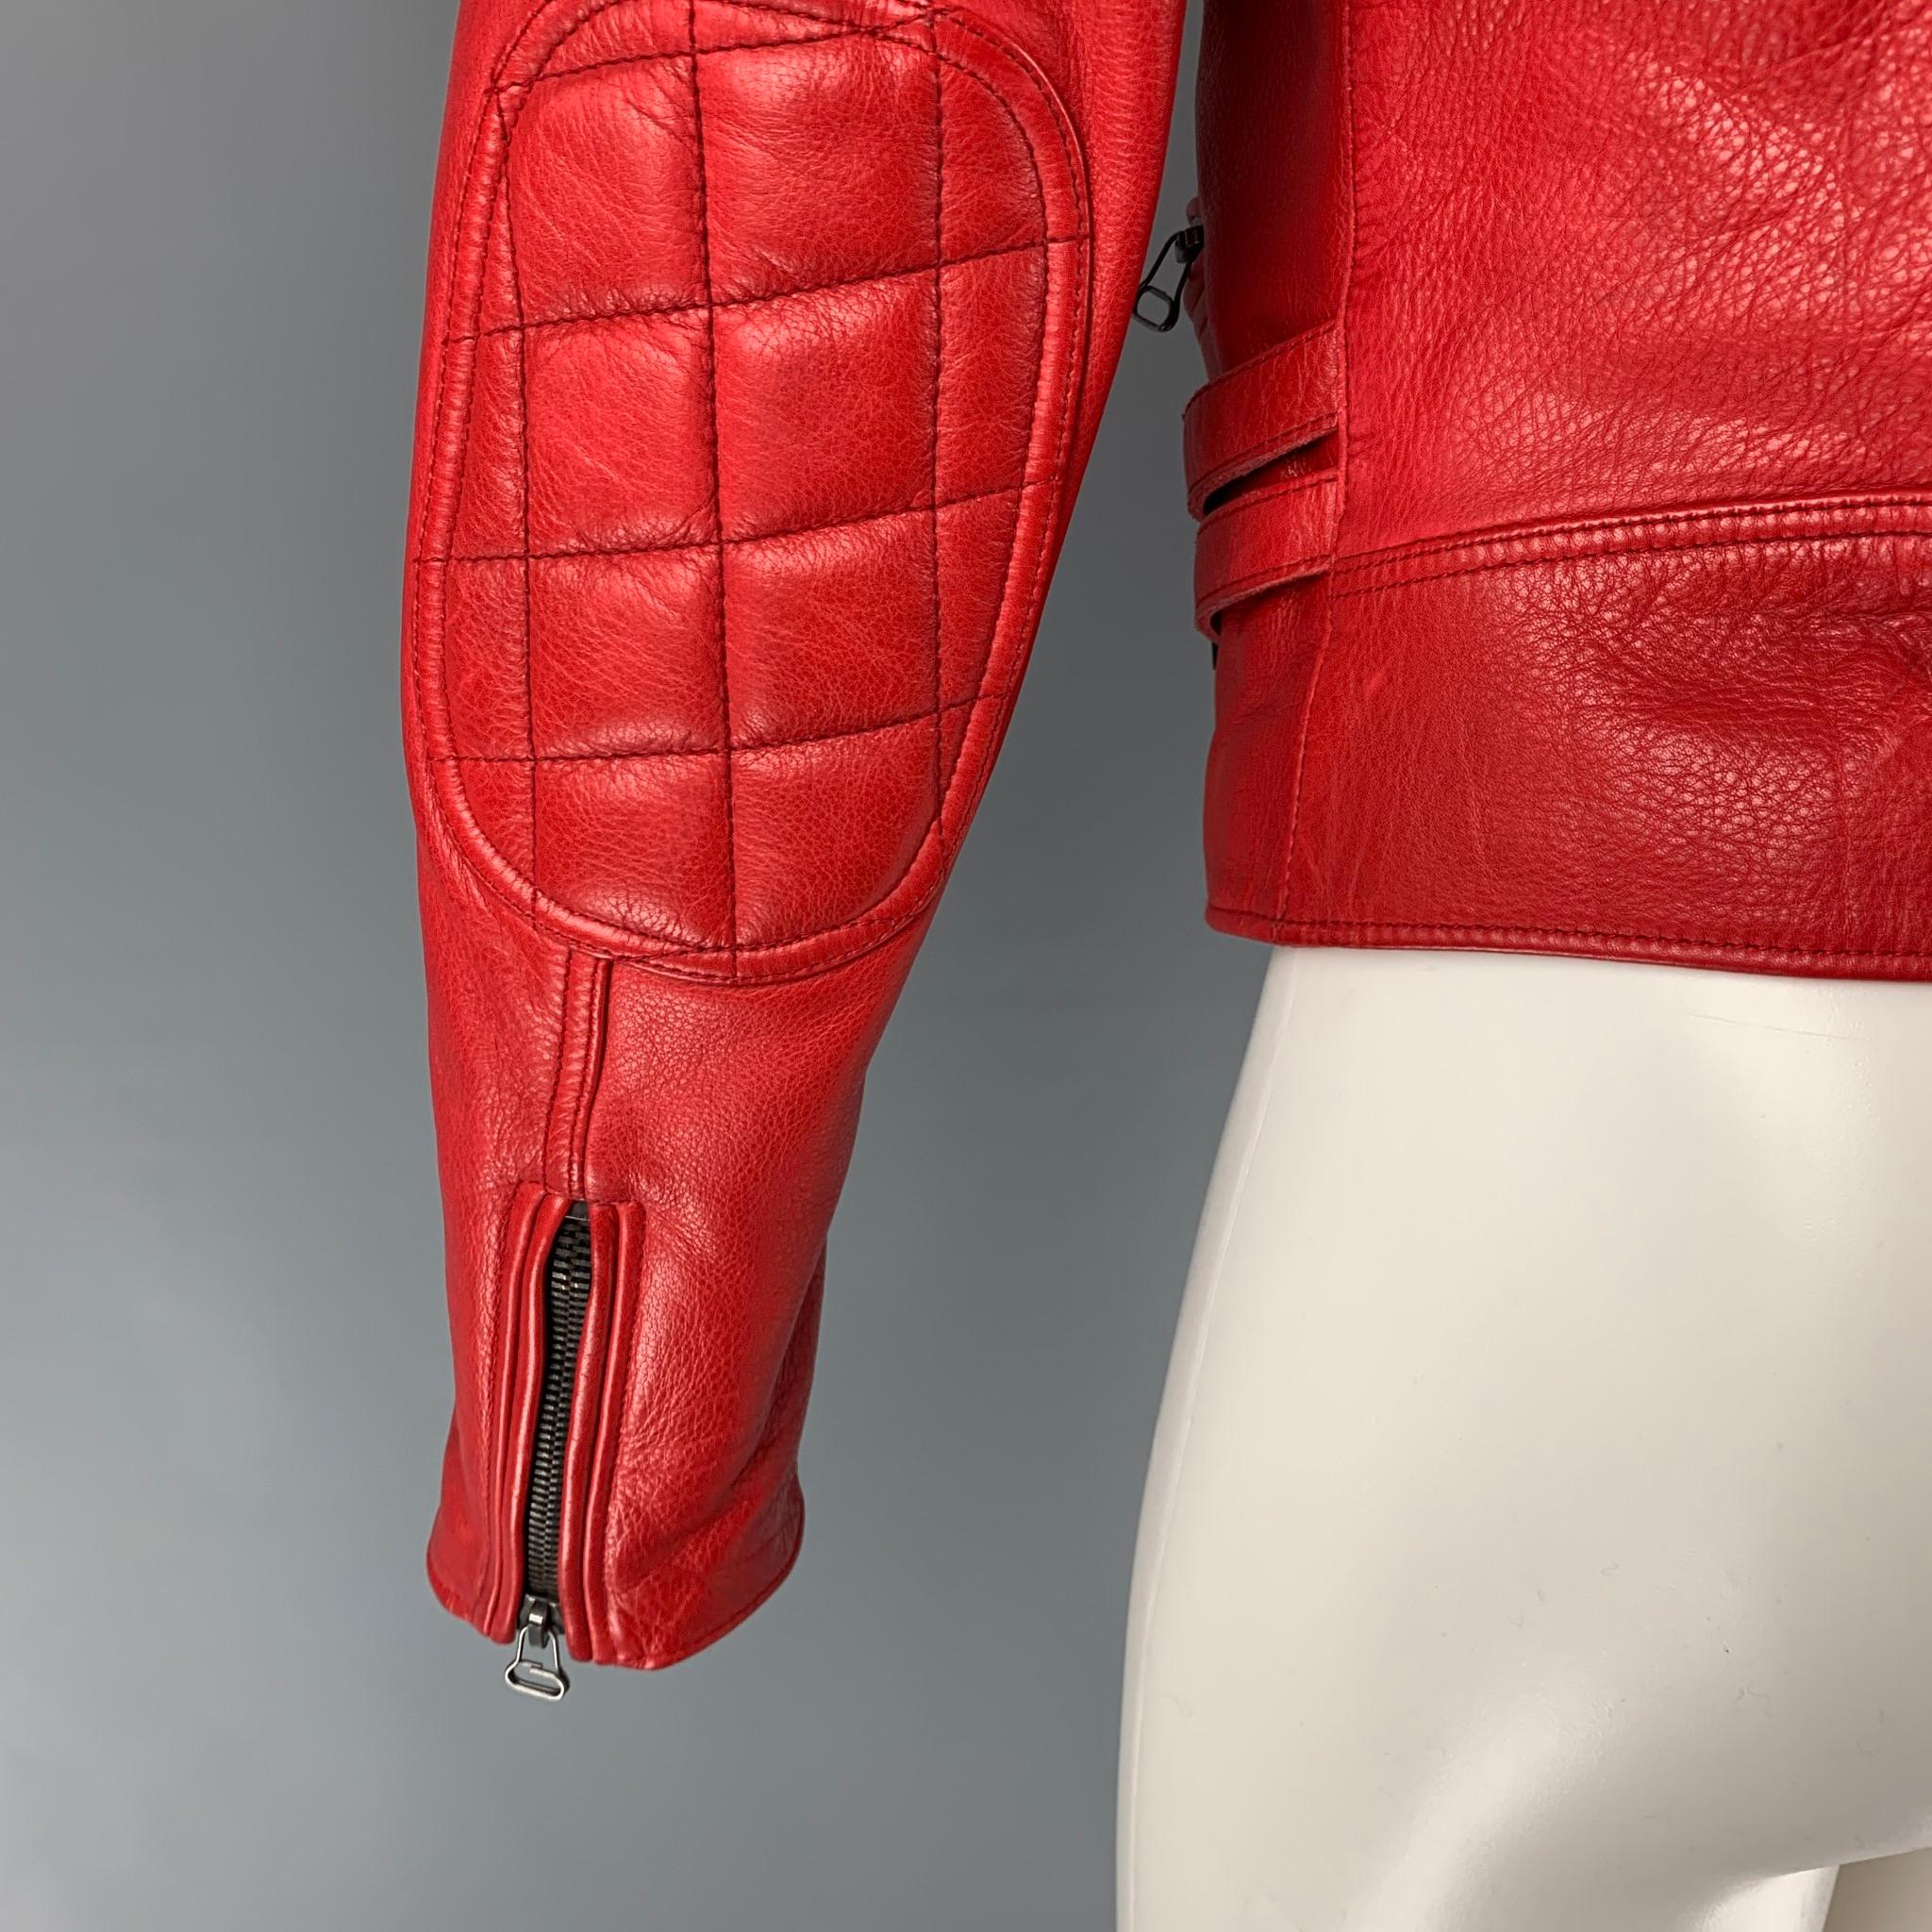 blouson leather jacket